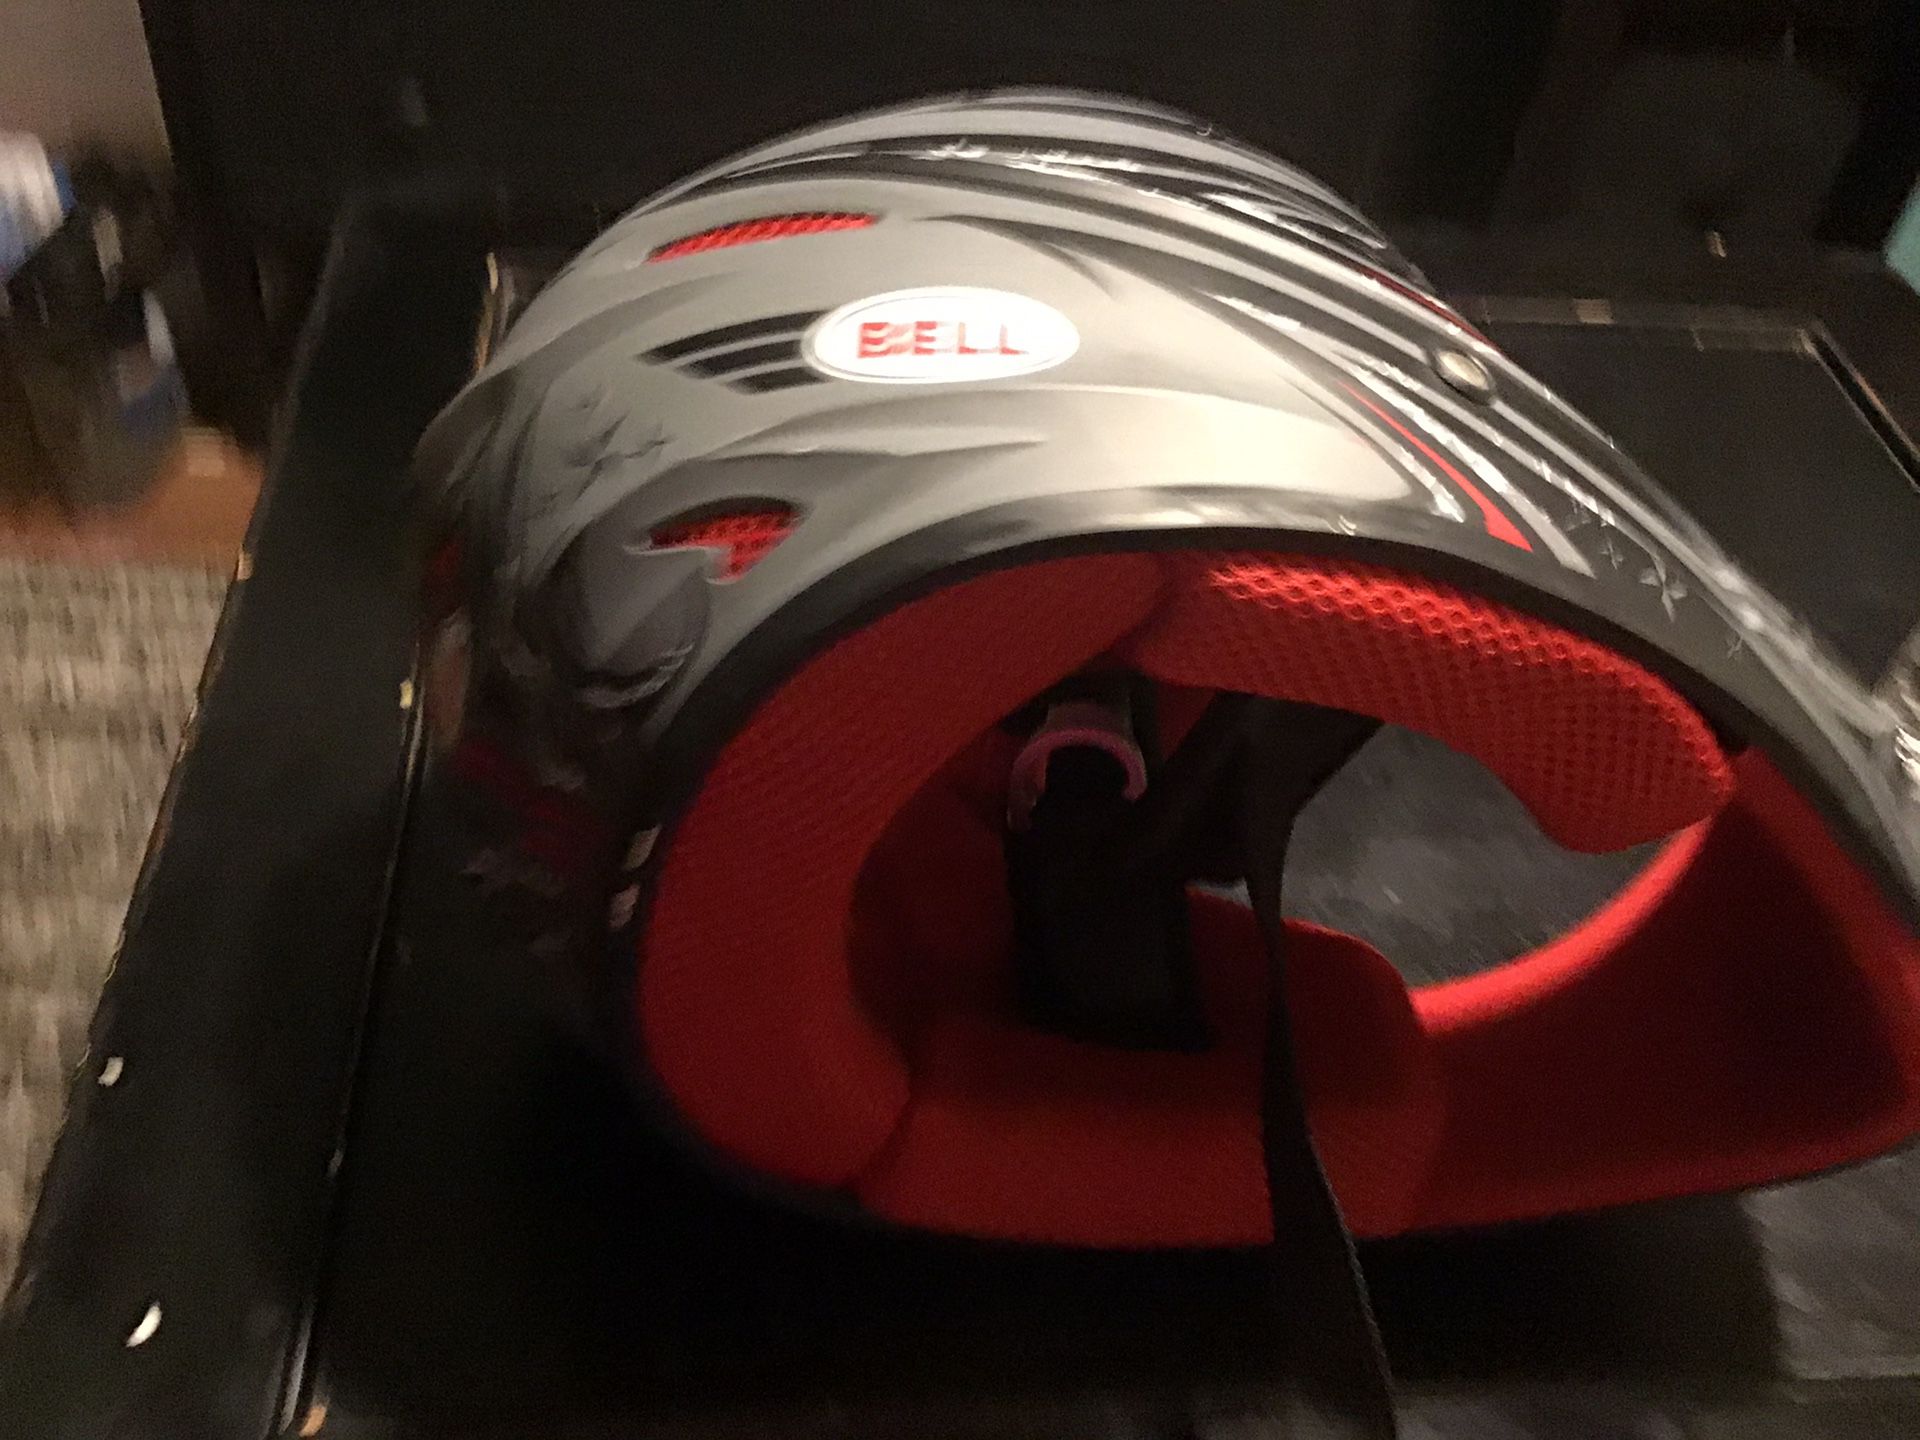 BELL motorcycle helmet